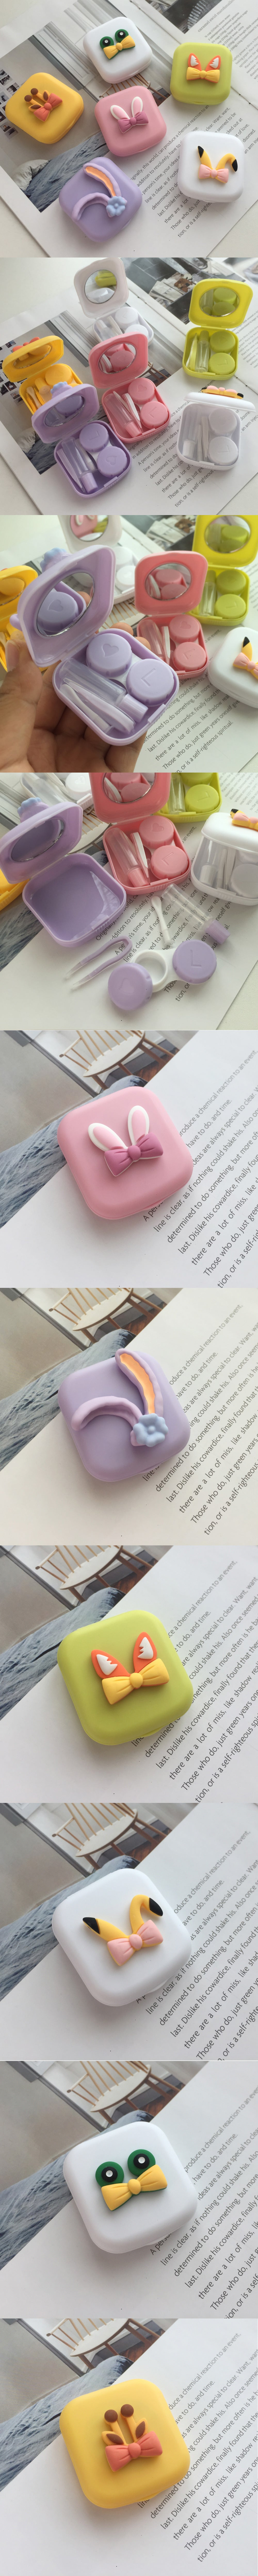 Cute Animal Ears Leak Proof Lens Case Travel Kit